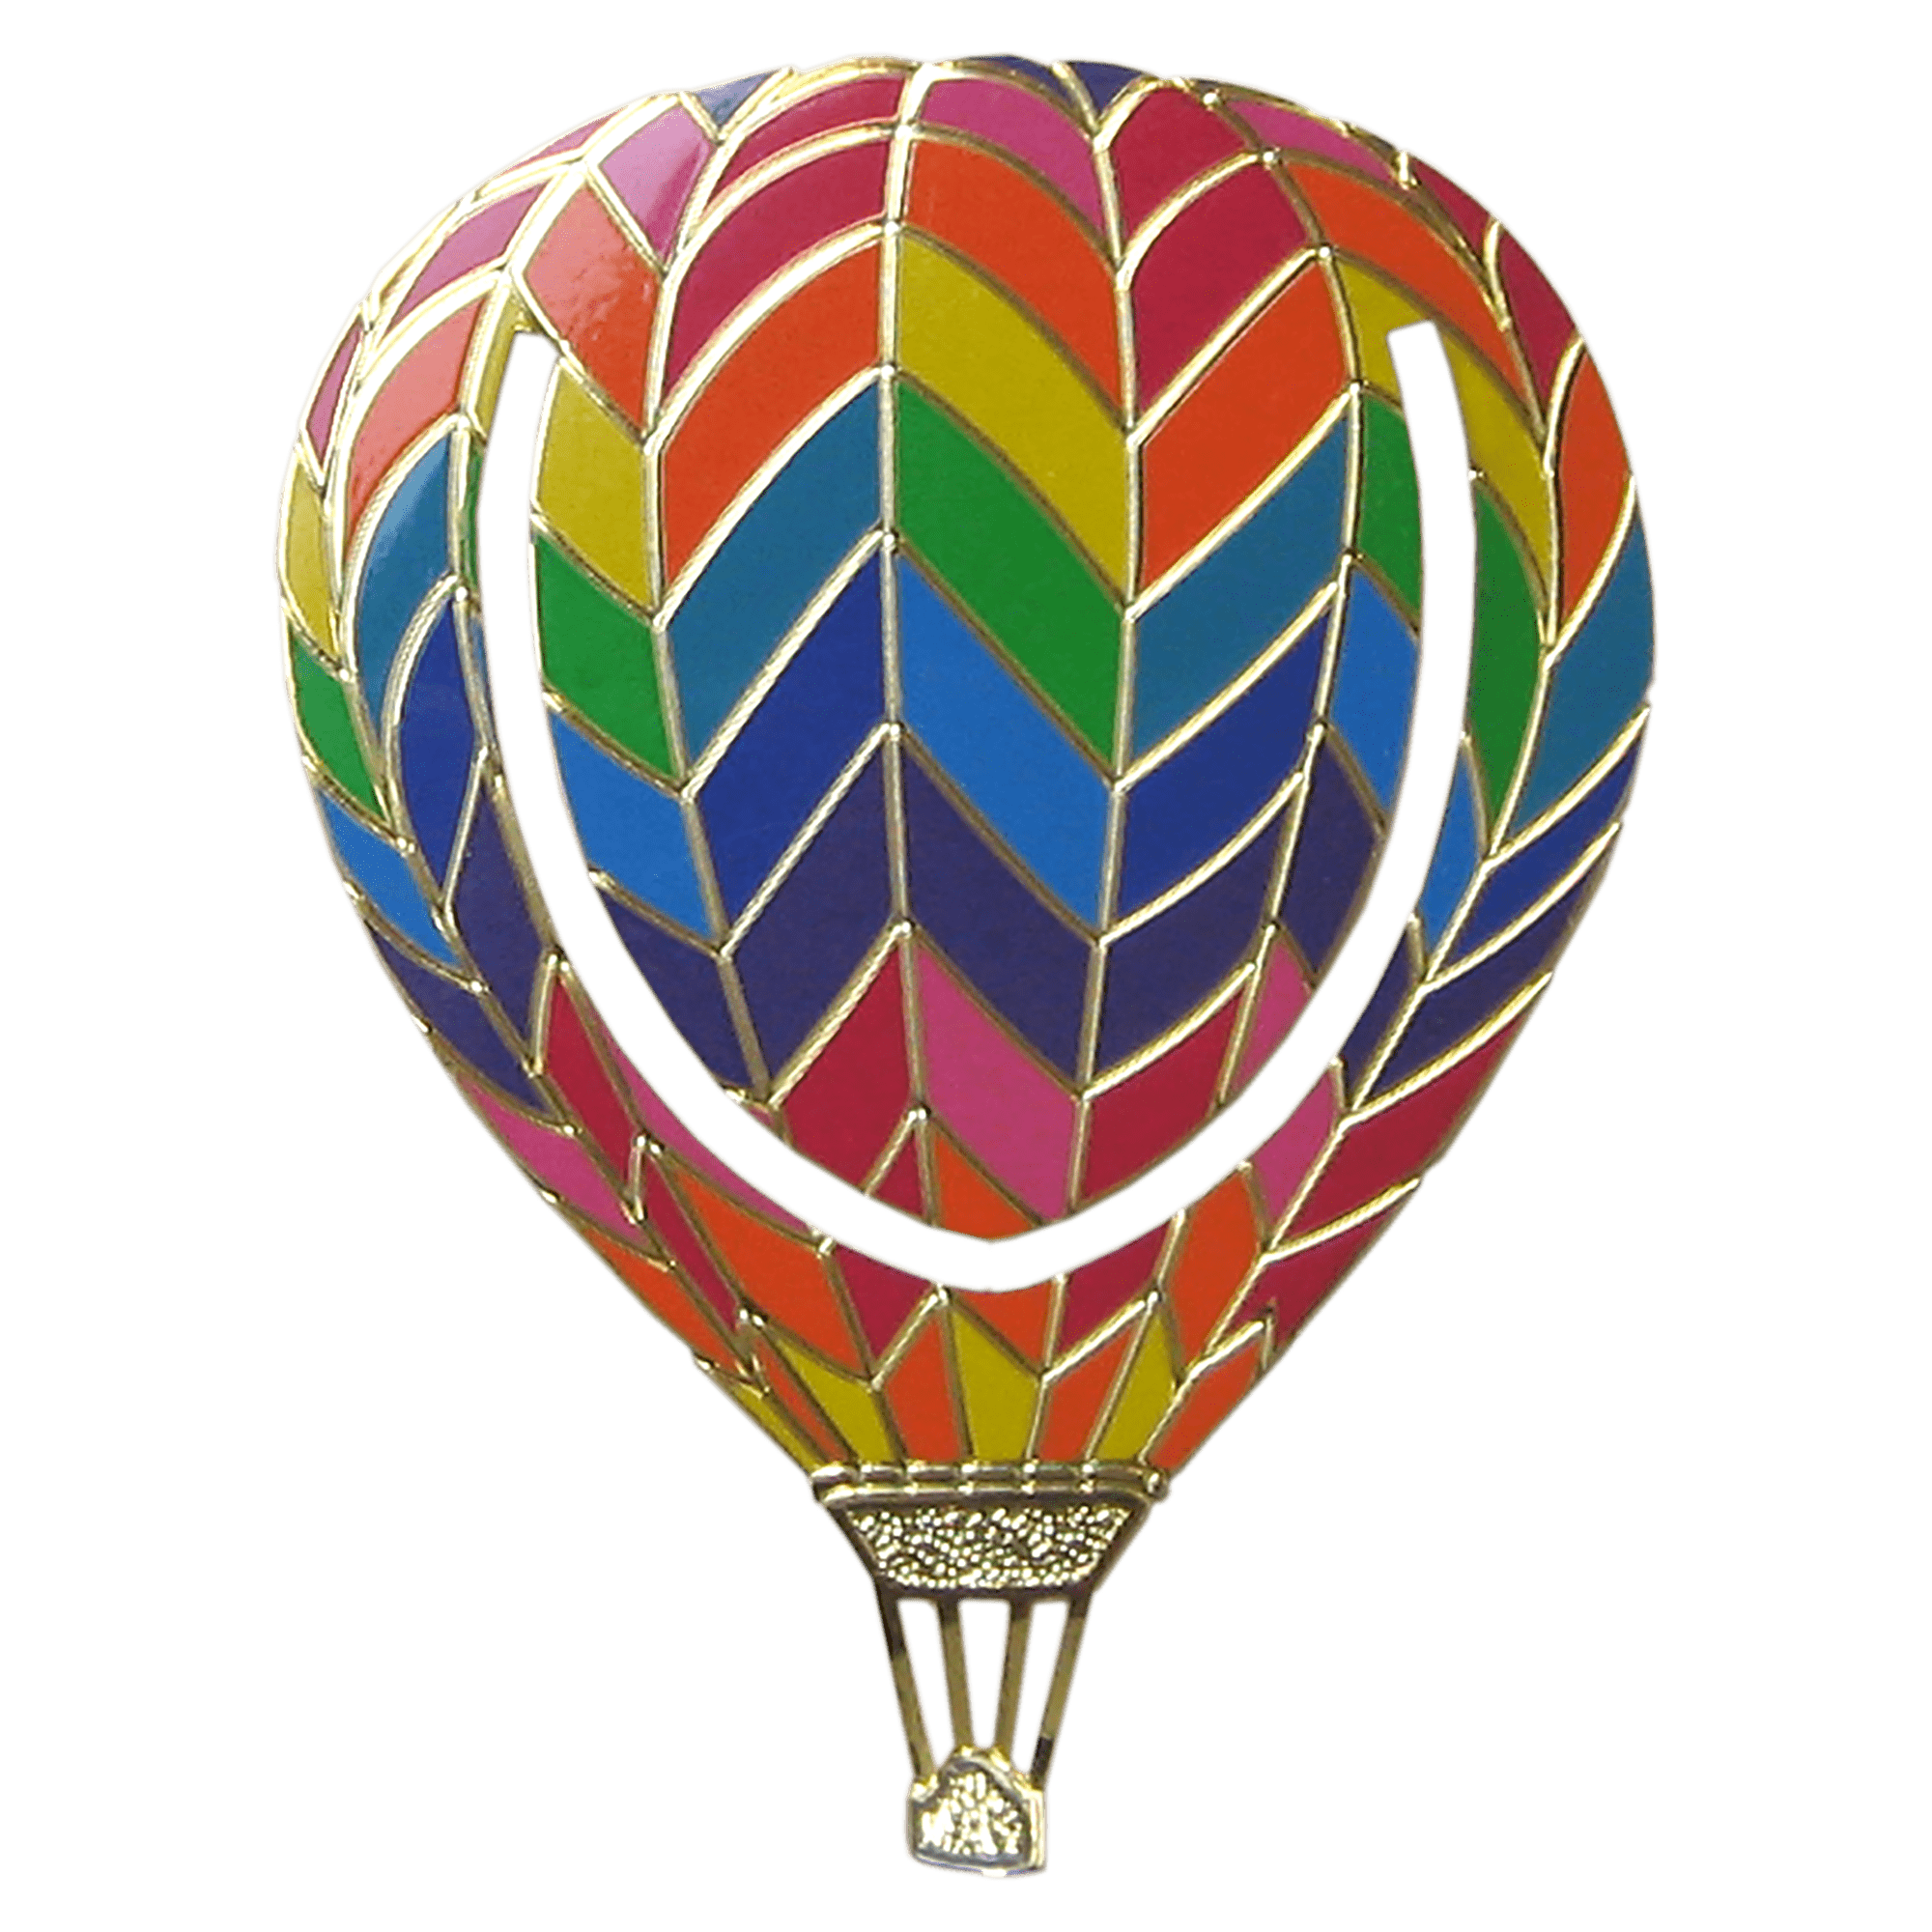 Brass Balloon Bookmark with 7 Color Silkscreen